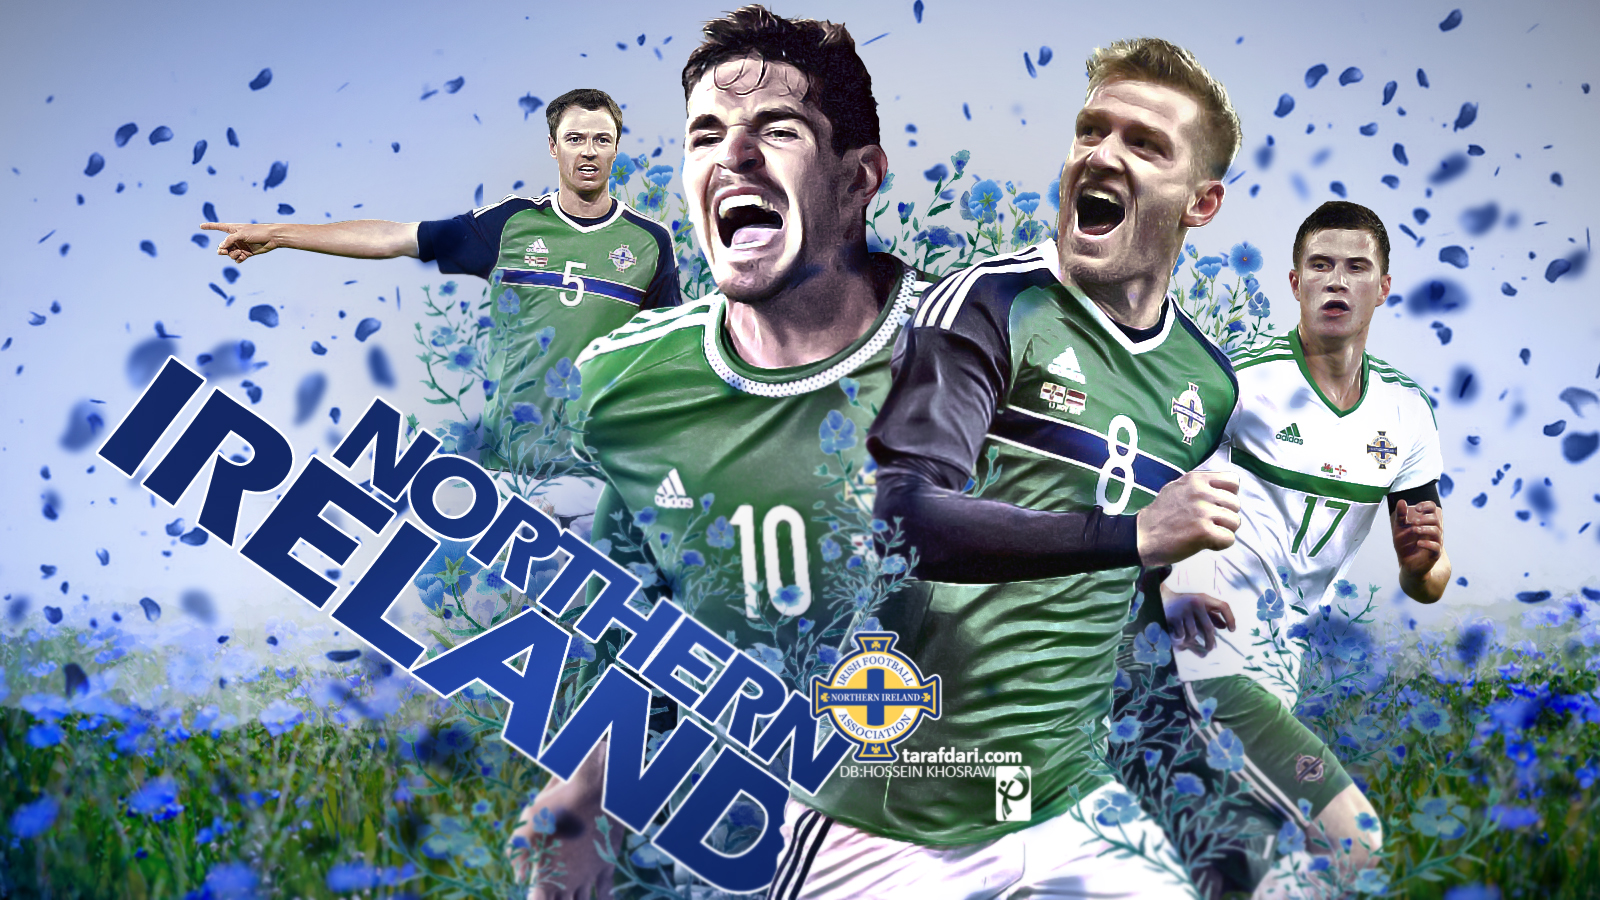 یورو 2016؛ پوستر اختصاصی طرفداری، اولین تجربه ایلند شمالی در یورو